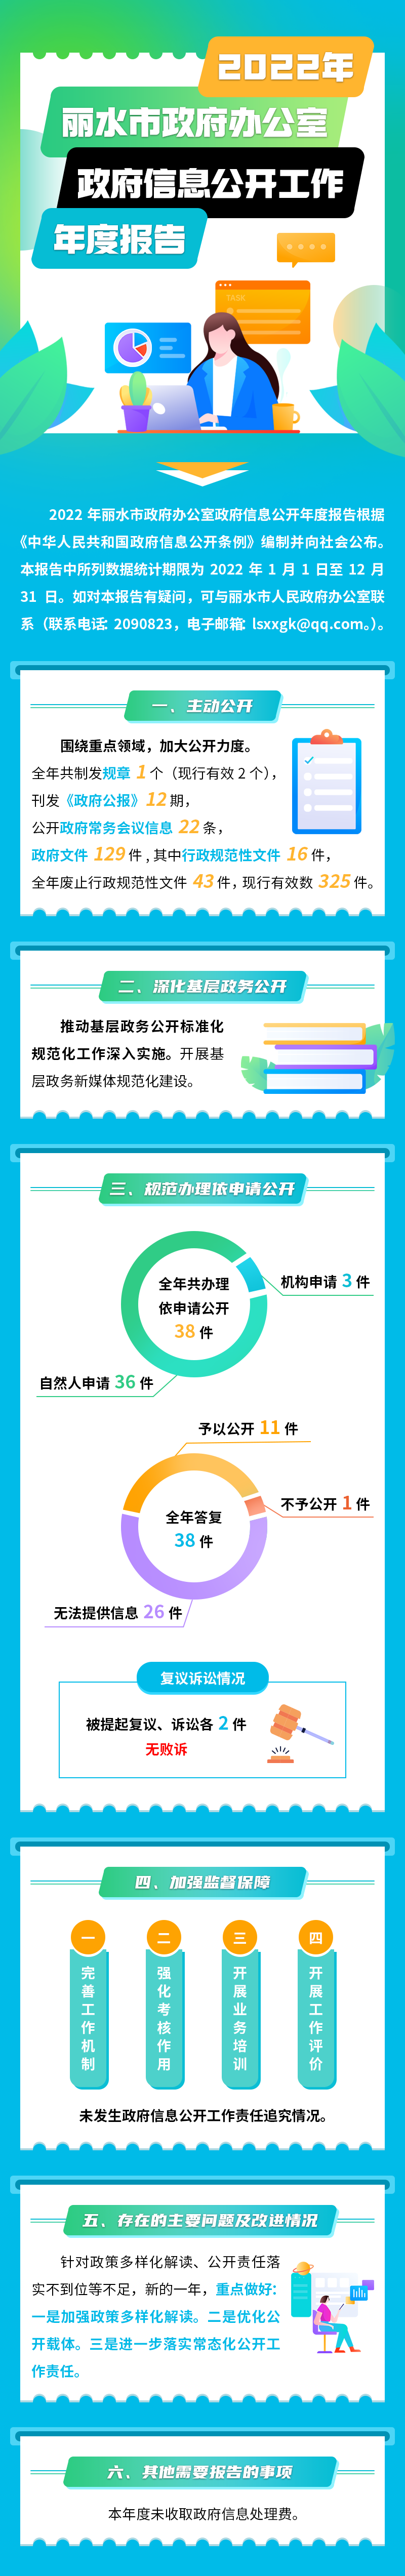 2022年丽水市政府办公室政府信息公开工作年度报告(4).png